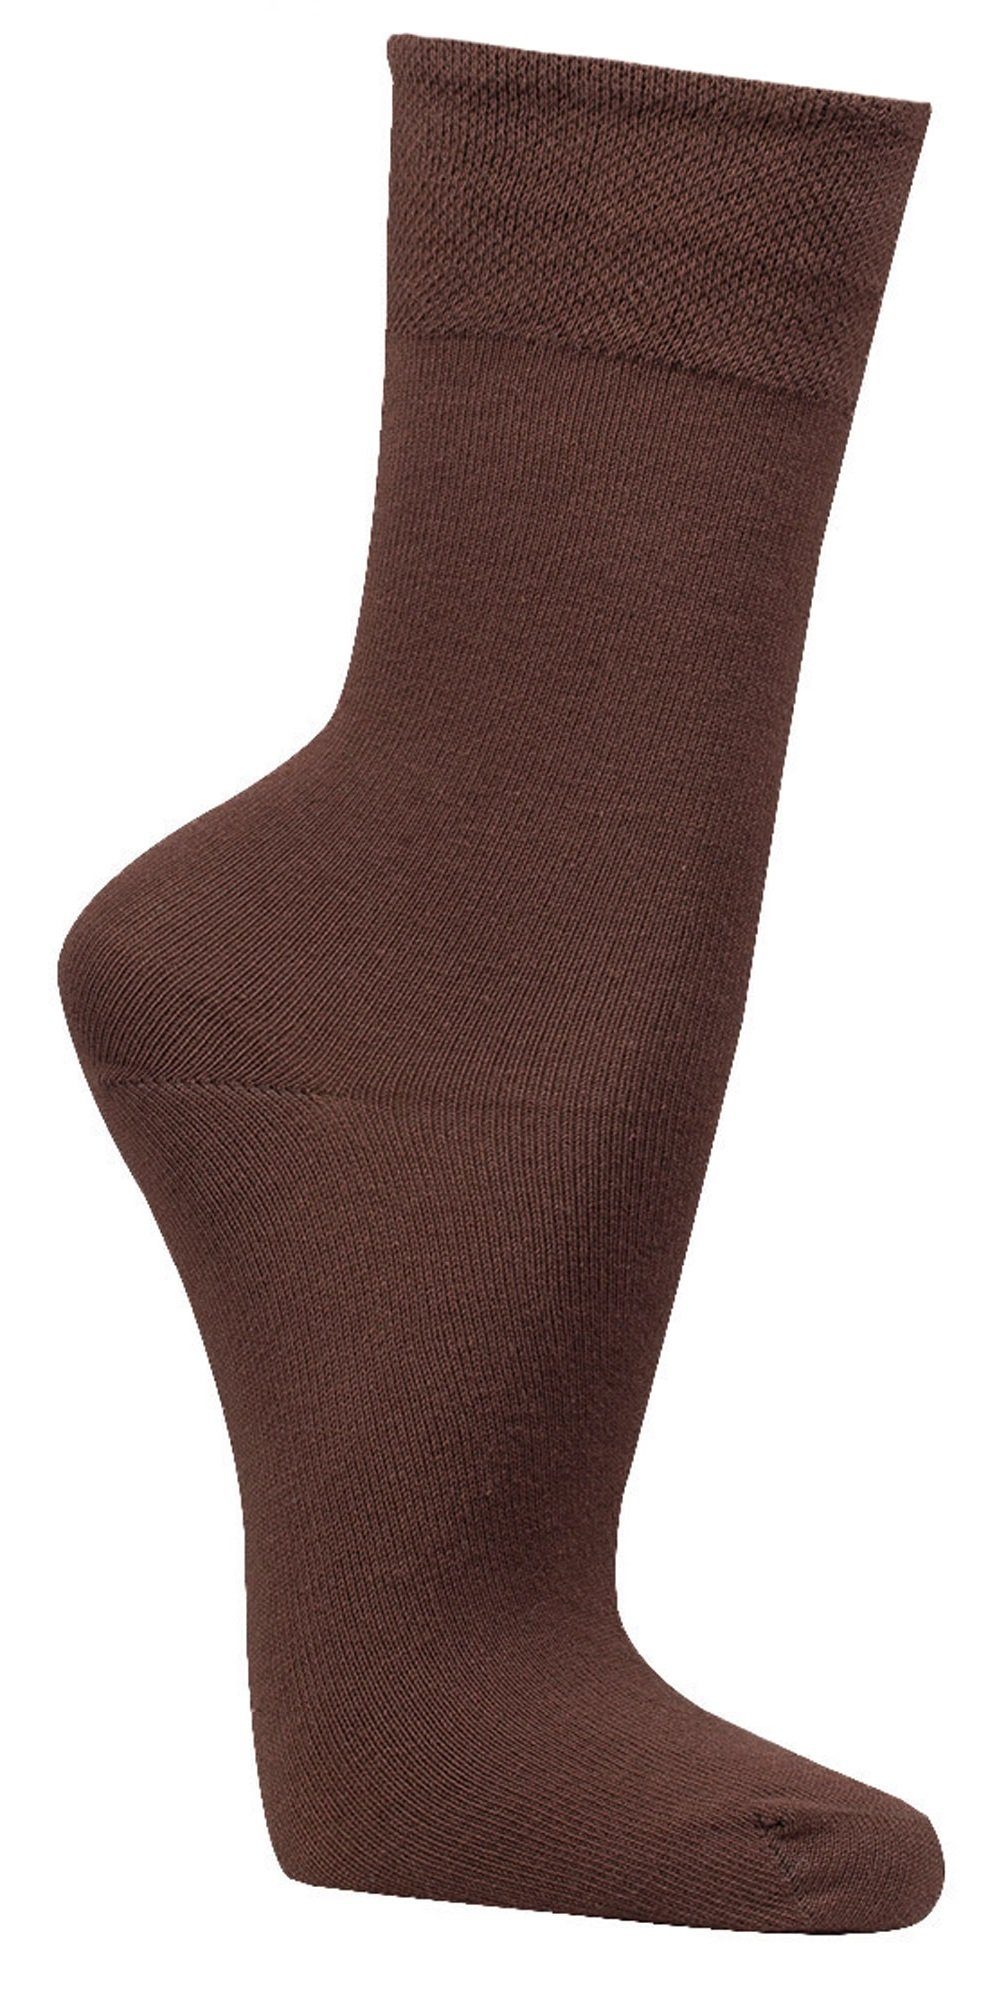 Basicsocken Komfort Dunkelbraun FussFreunde 6 Baumwoll-Socken Piqué-Bund breitem Paar mit